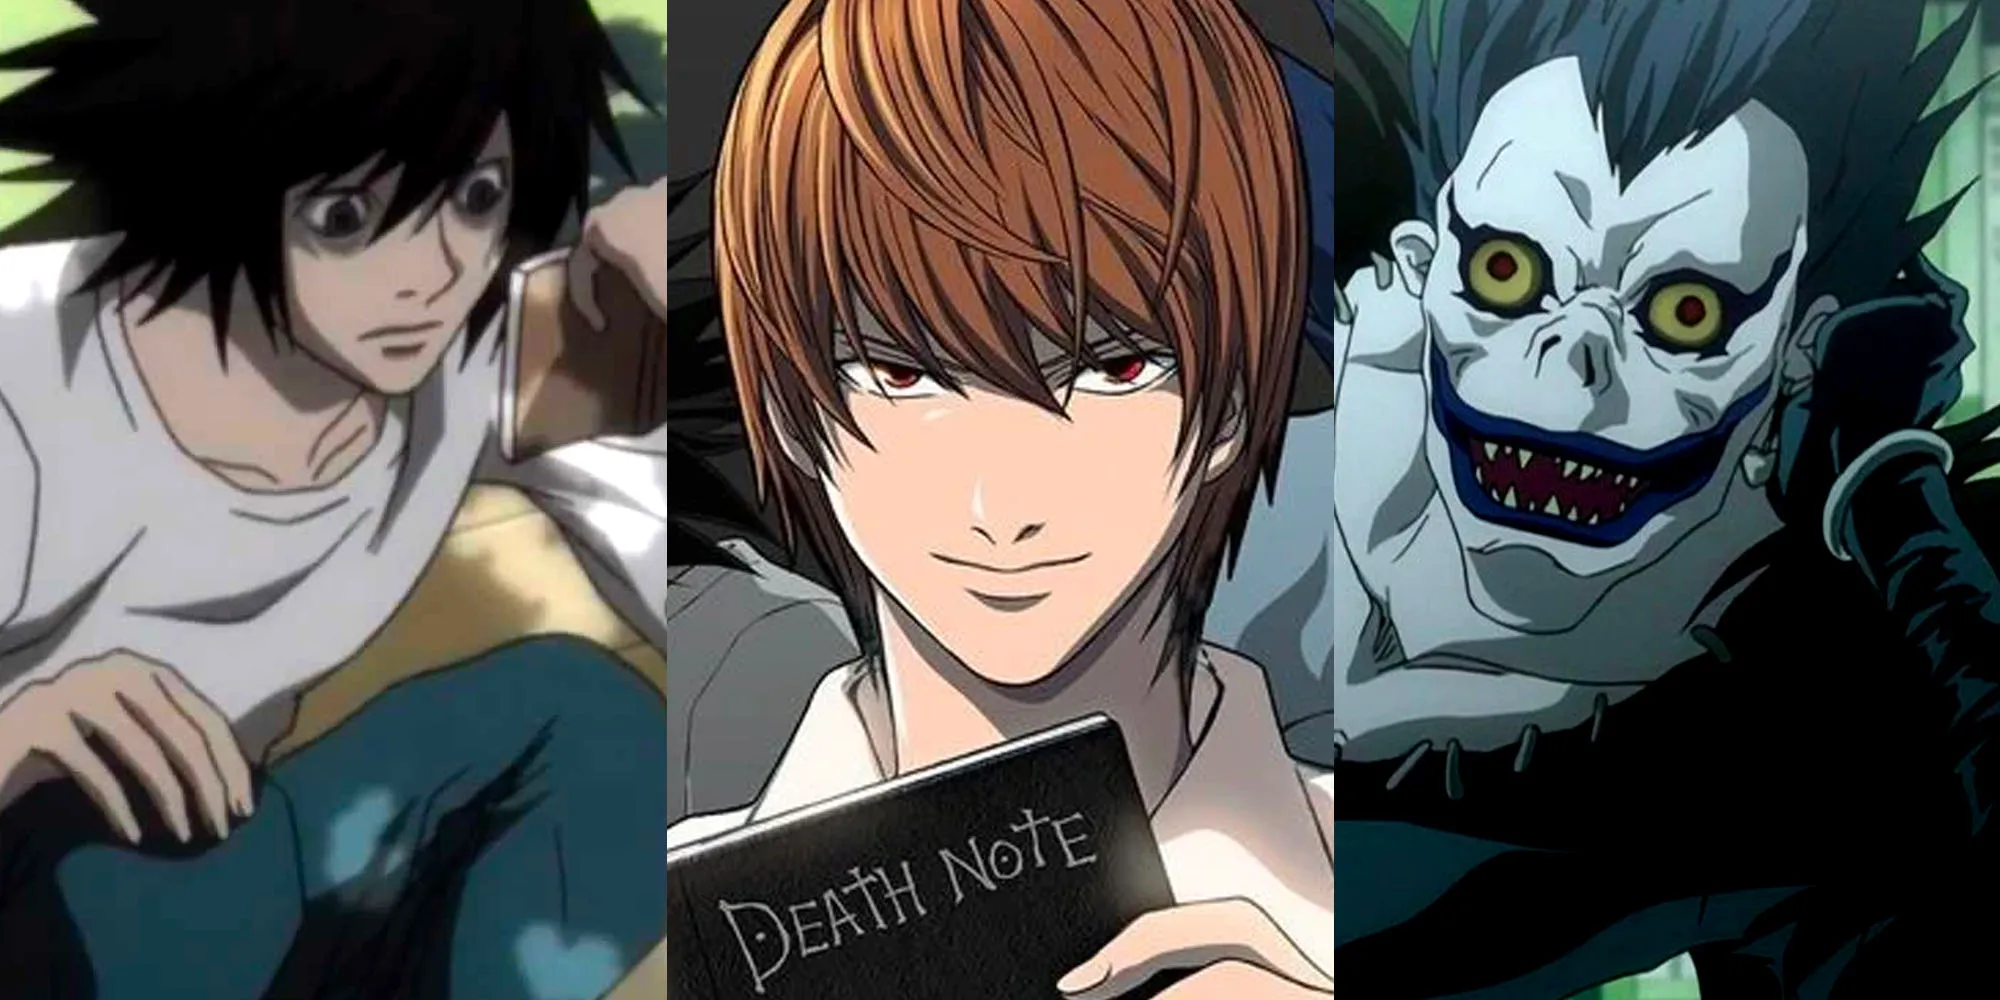 Death Note - Immagine divisa dei personaggi principali